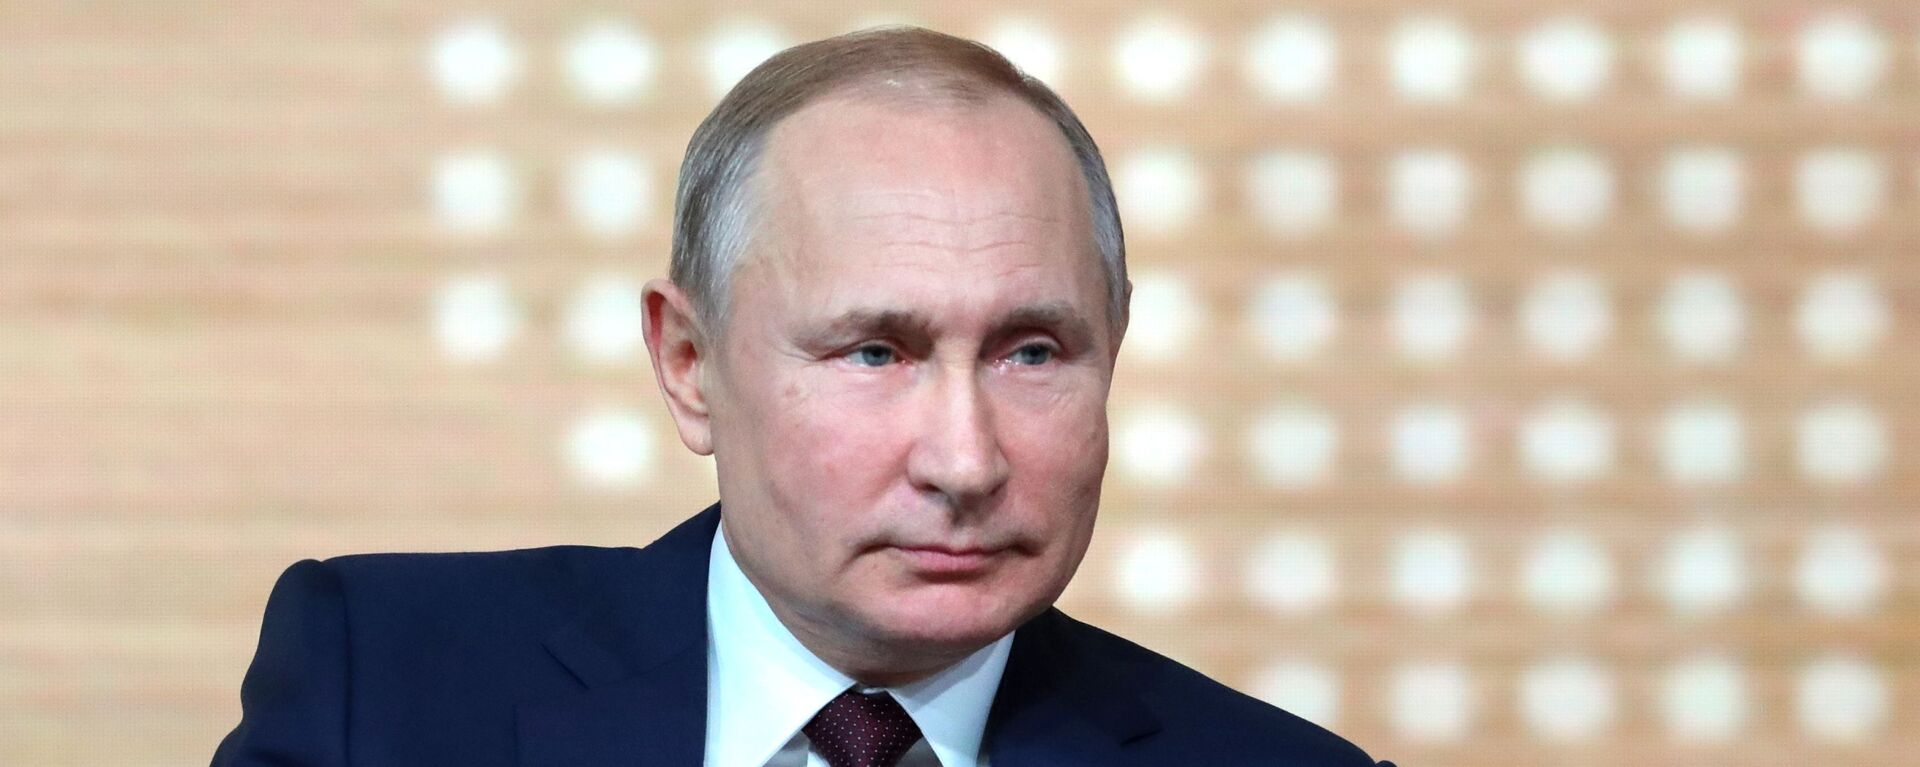 Krievijas prezidents Vladimirs Putins - Sputnik Latvija, 1920, 16.06.2021